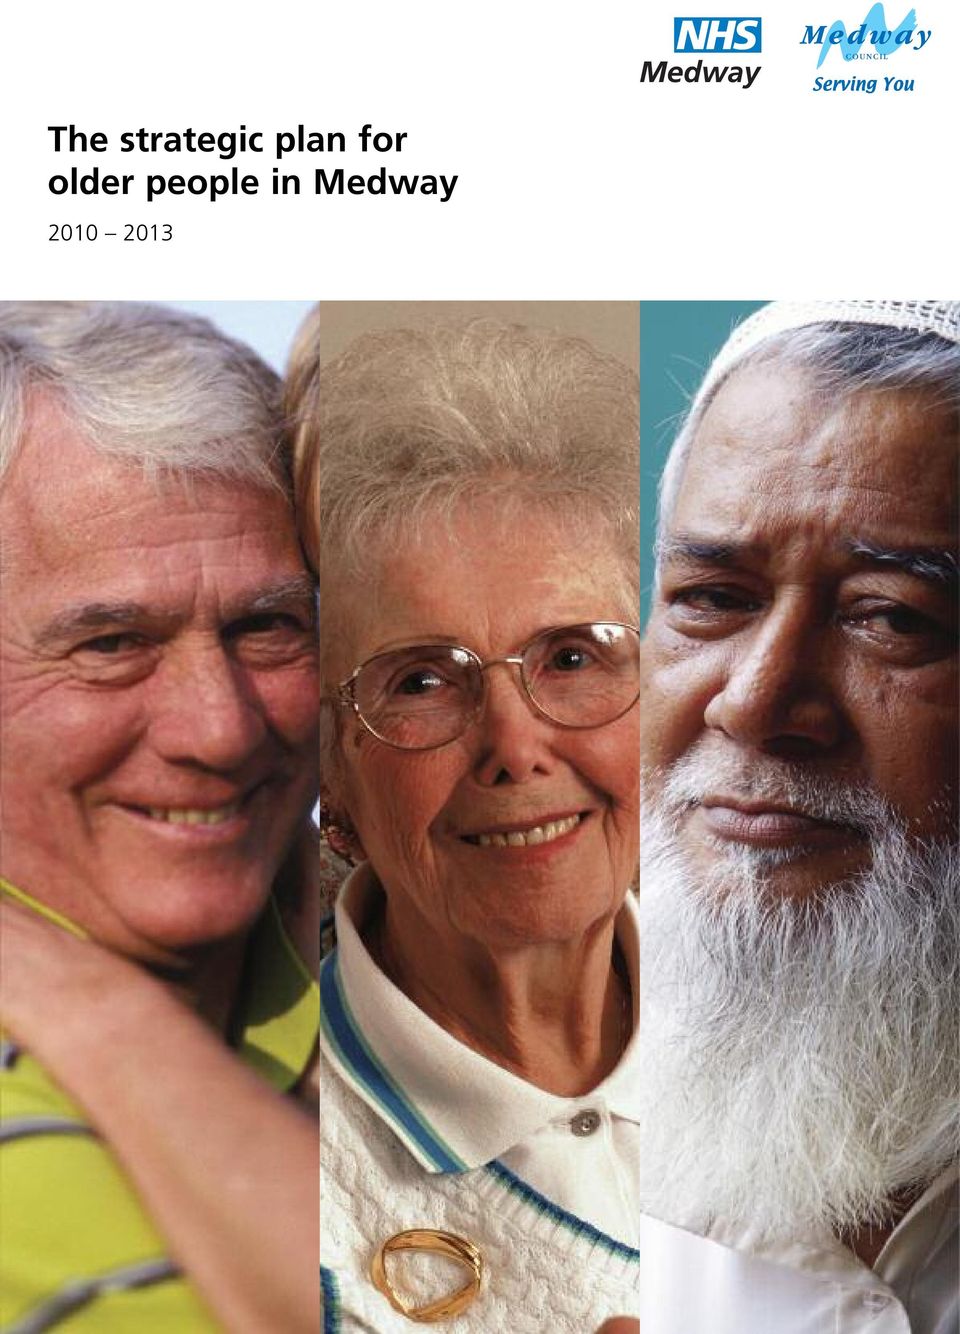 older people